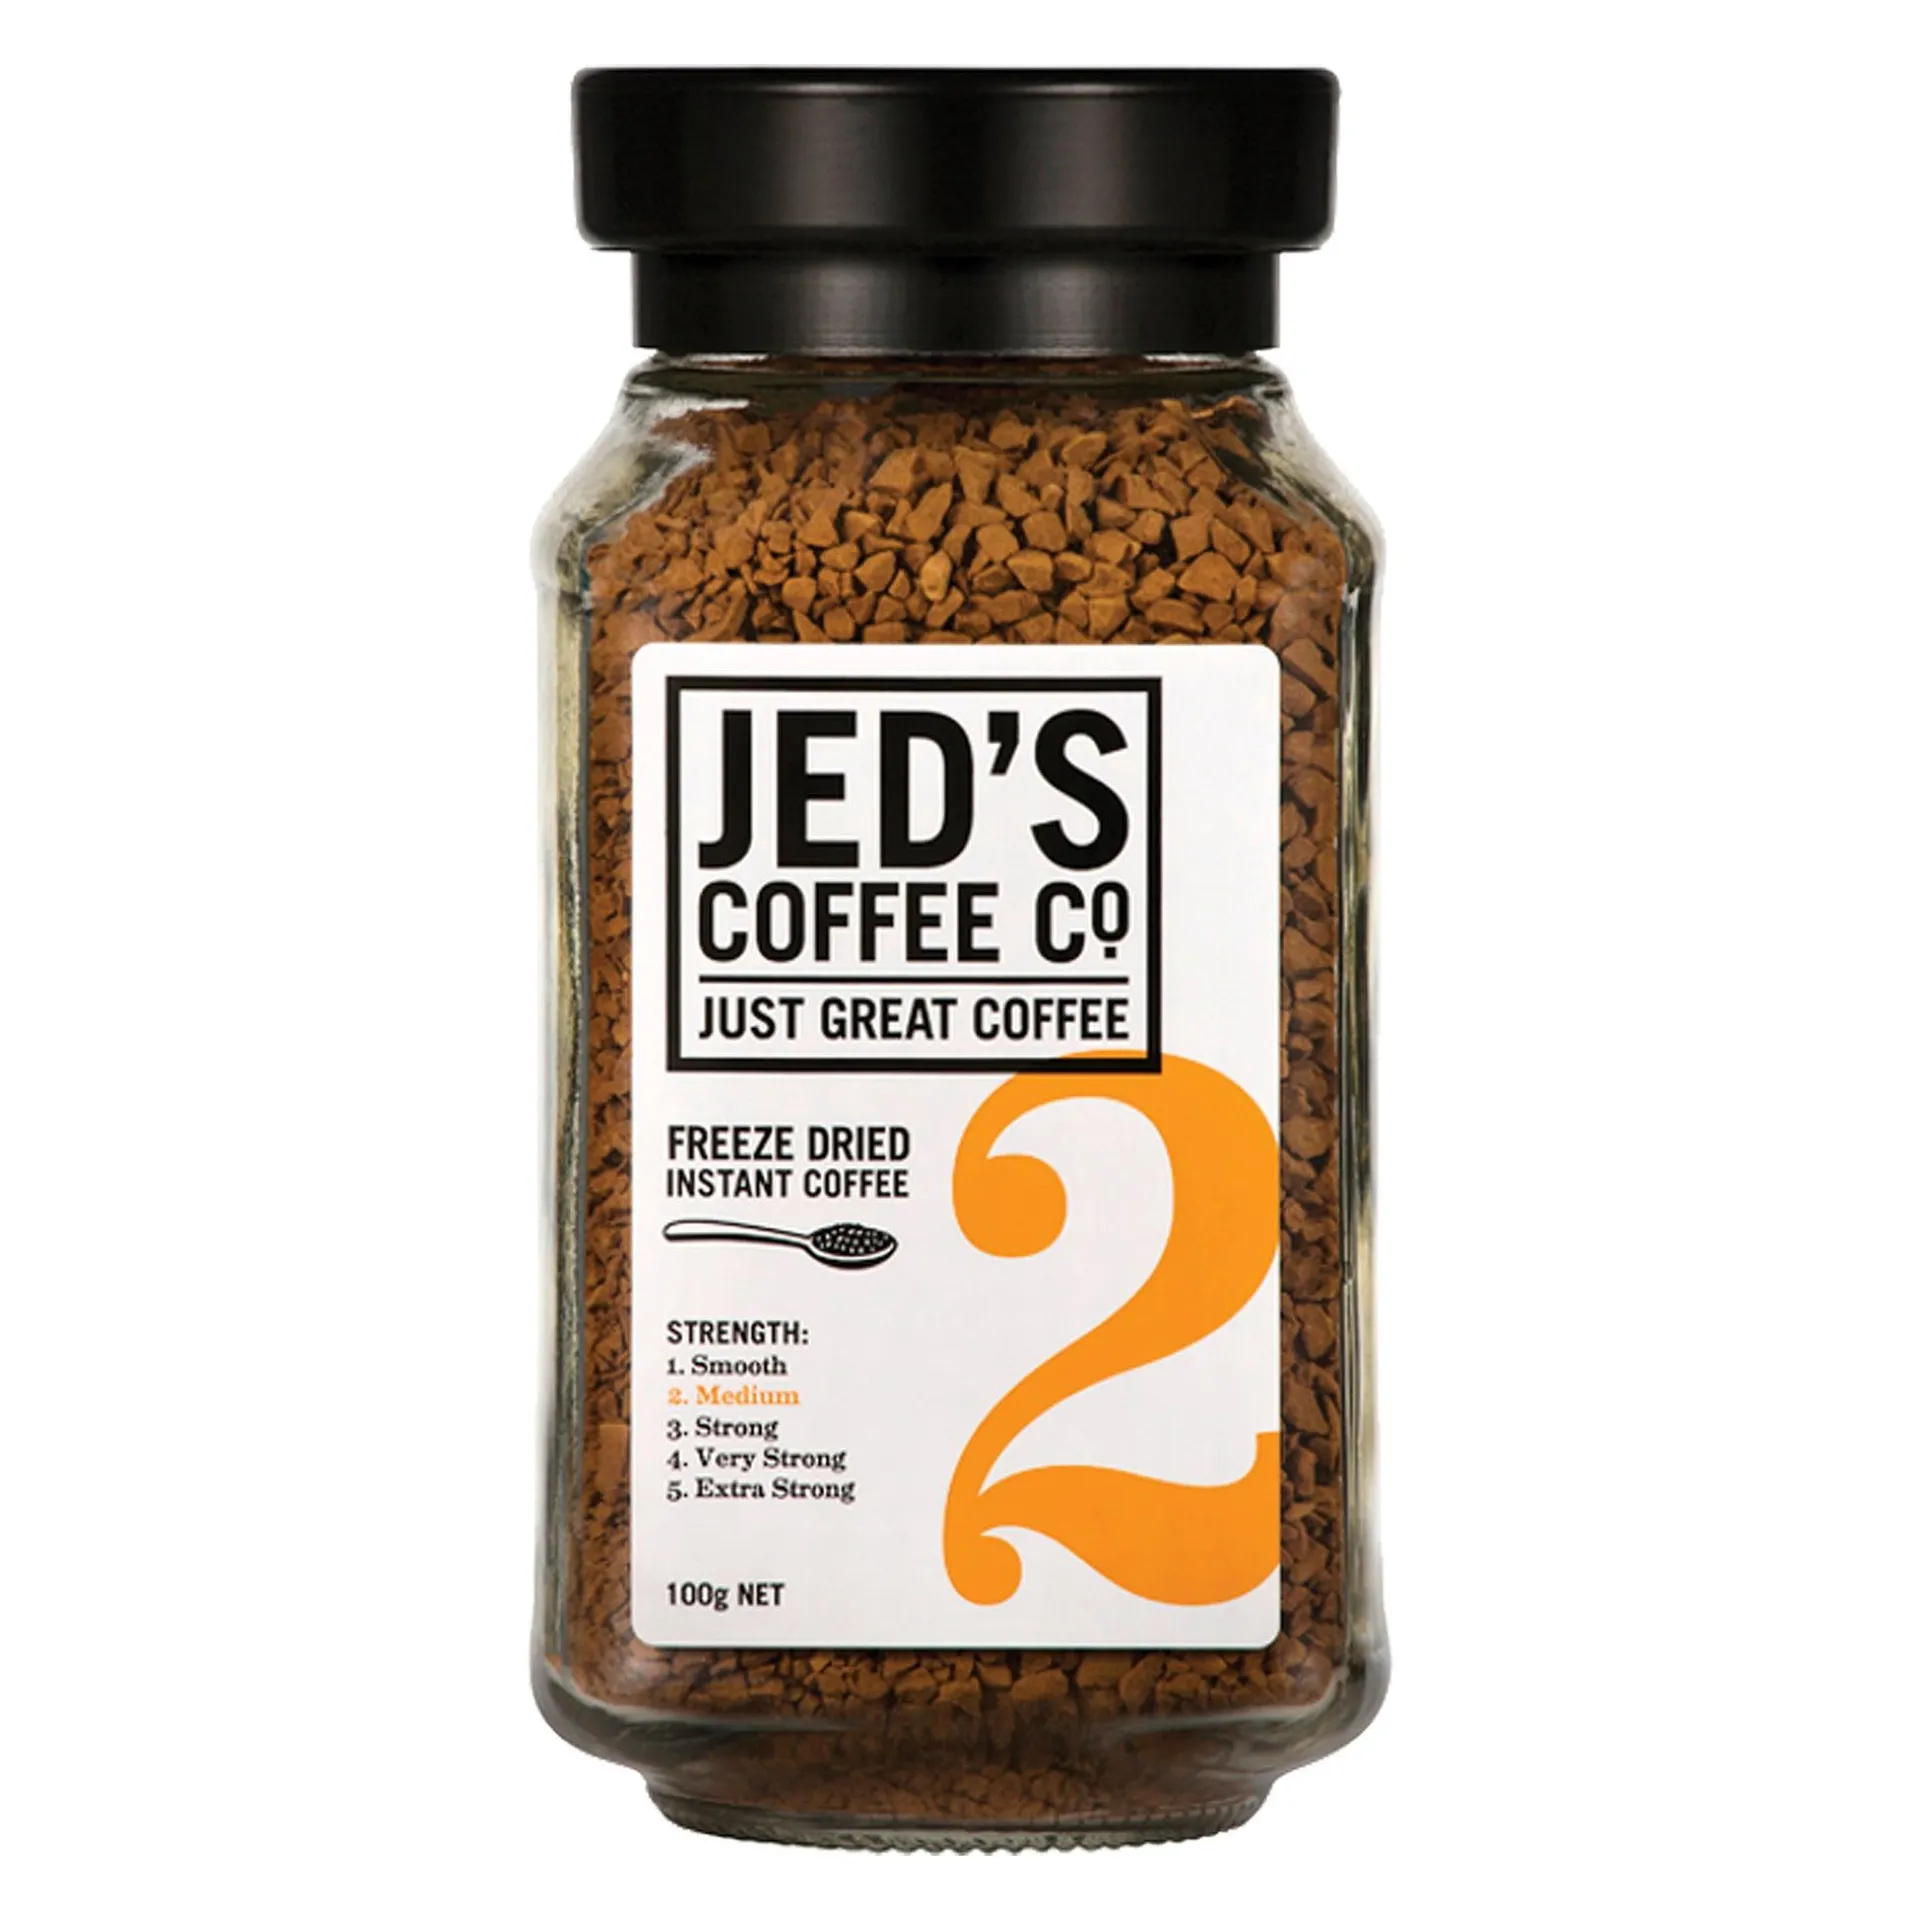 Jeds Blend 2 Freeze Dried Coffee 100g